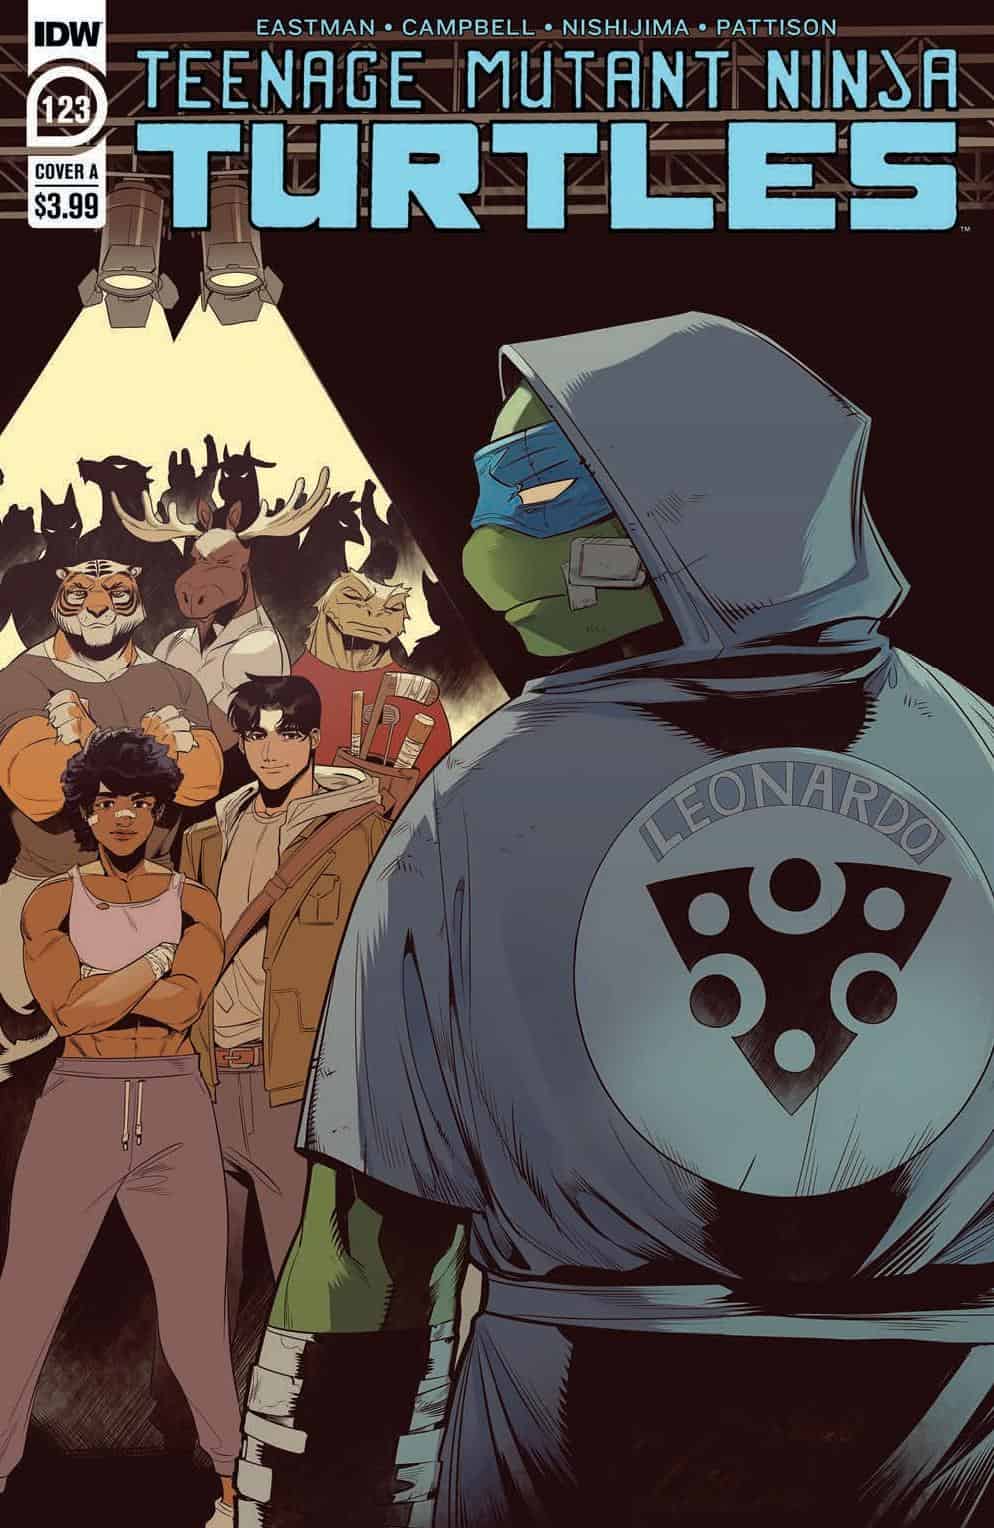 SNEAK PEEK Preview of IDW Publishing's Teenage Mutant Ninja Turtles